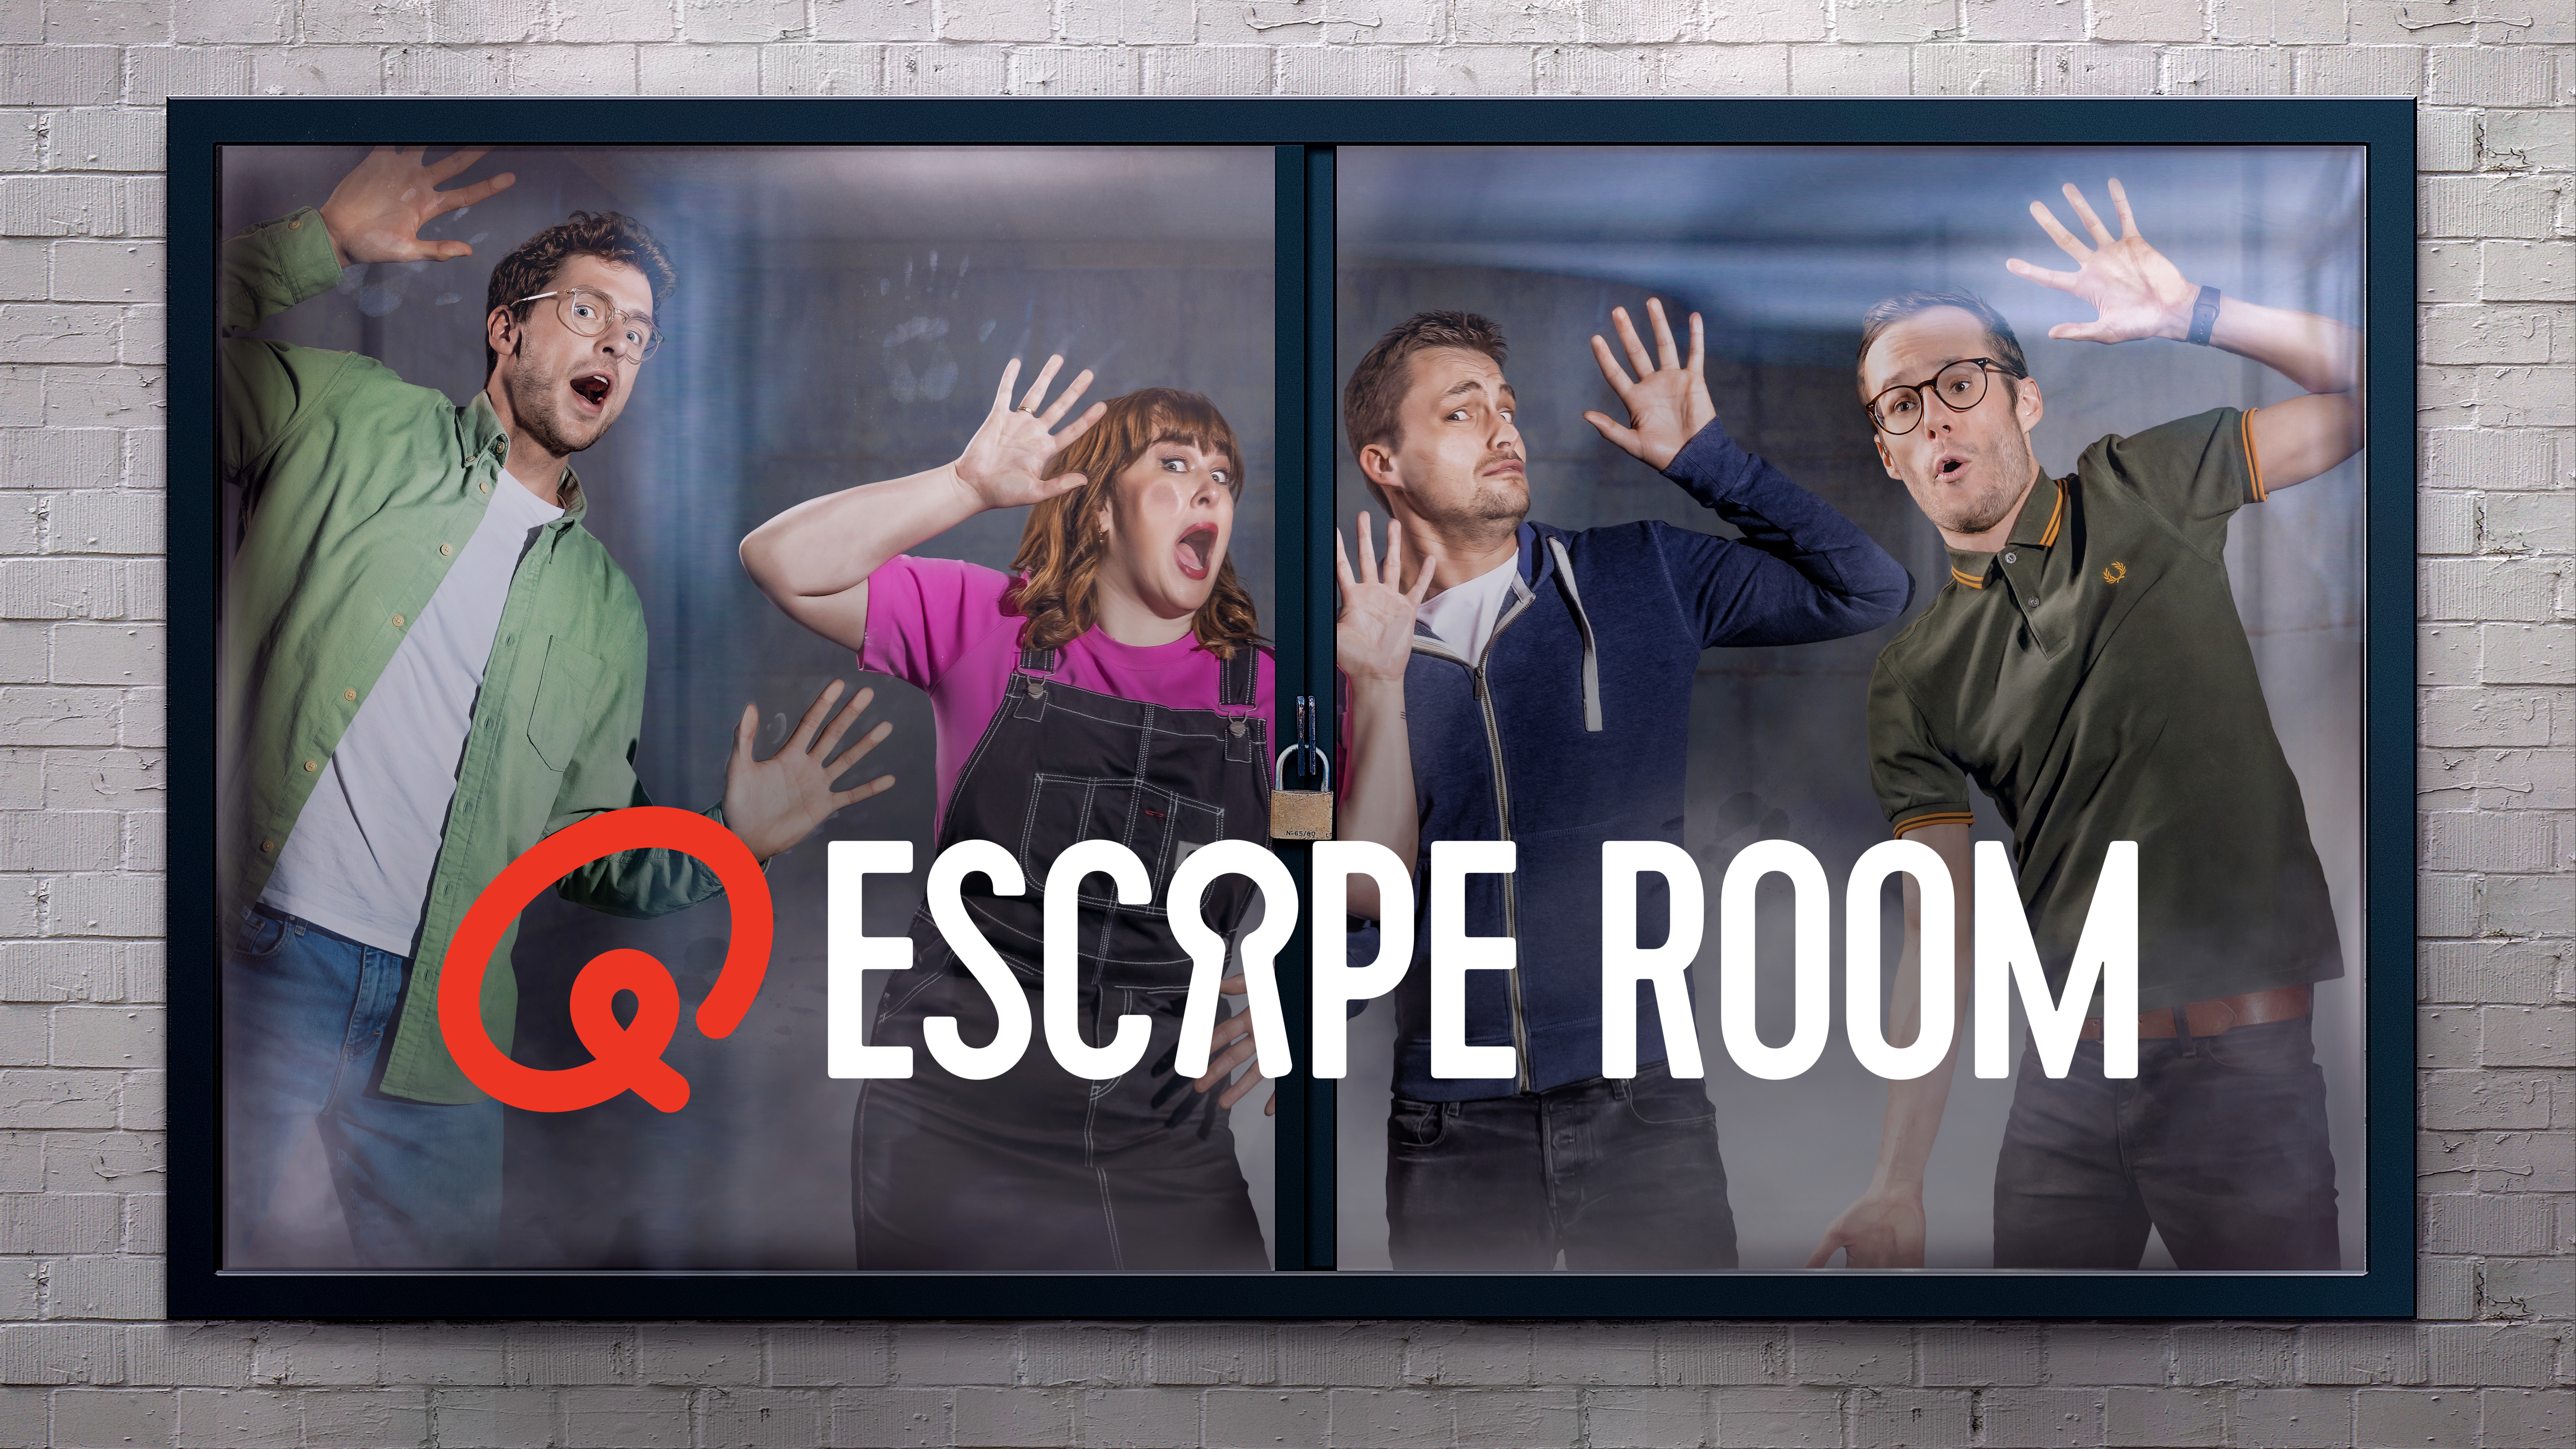 Q escaperoom copy1